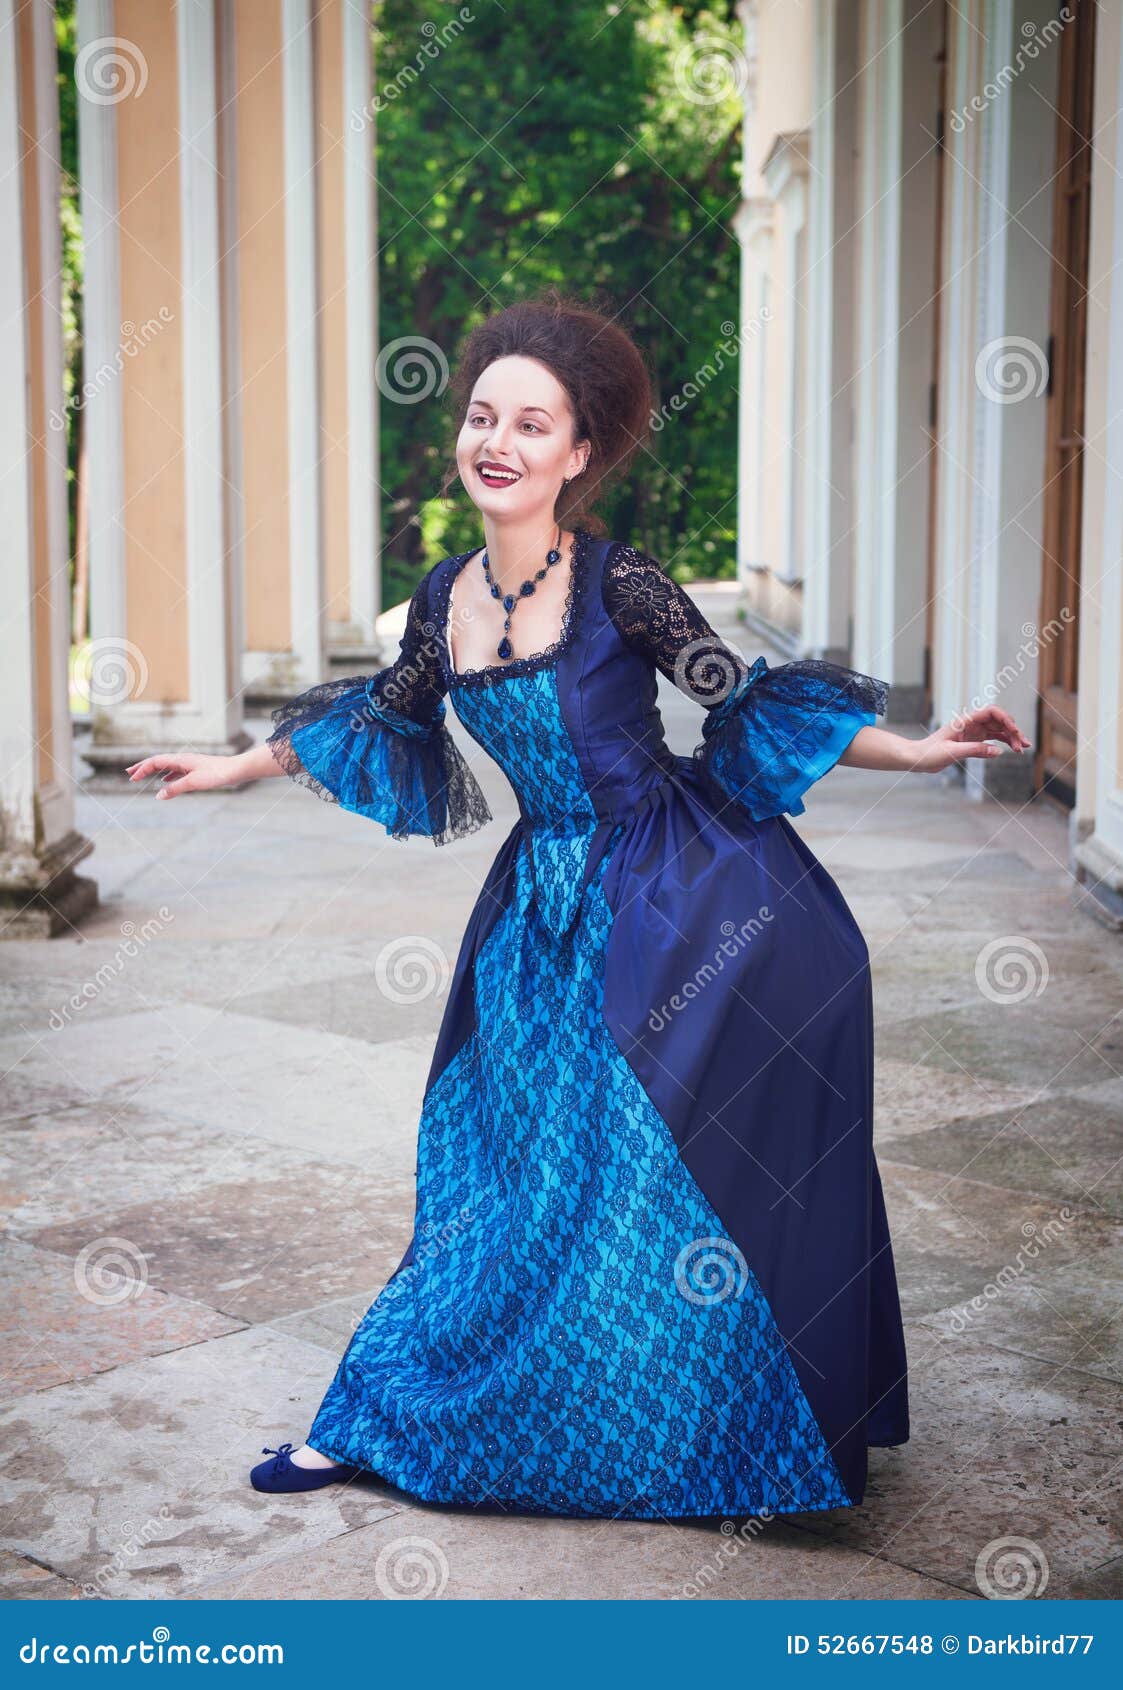 https://thumbs.dreamstime.com/z/mujer-joven-hermosa-en-el-vestido-medieval-azul-que-hace-curtsey-52667548.jpg